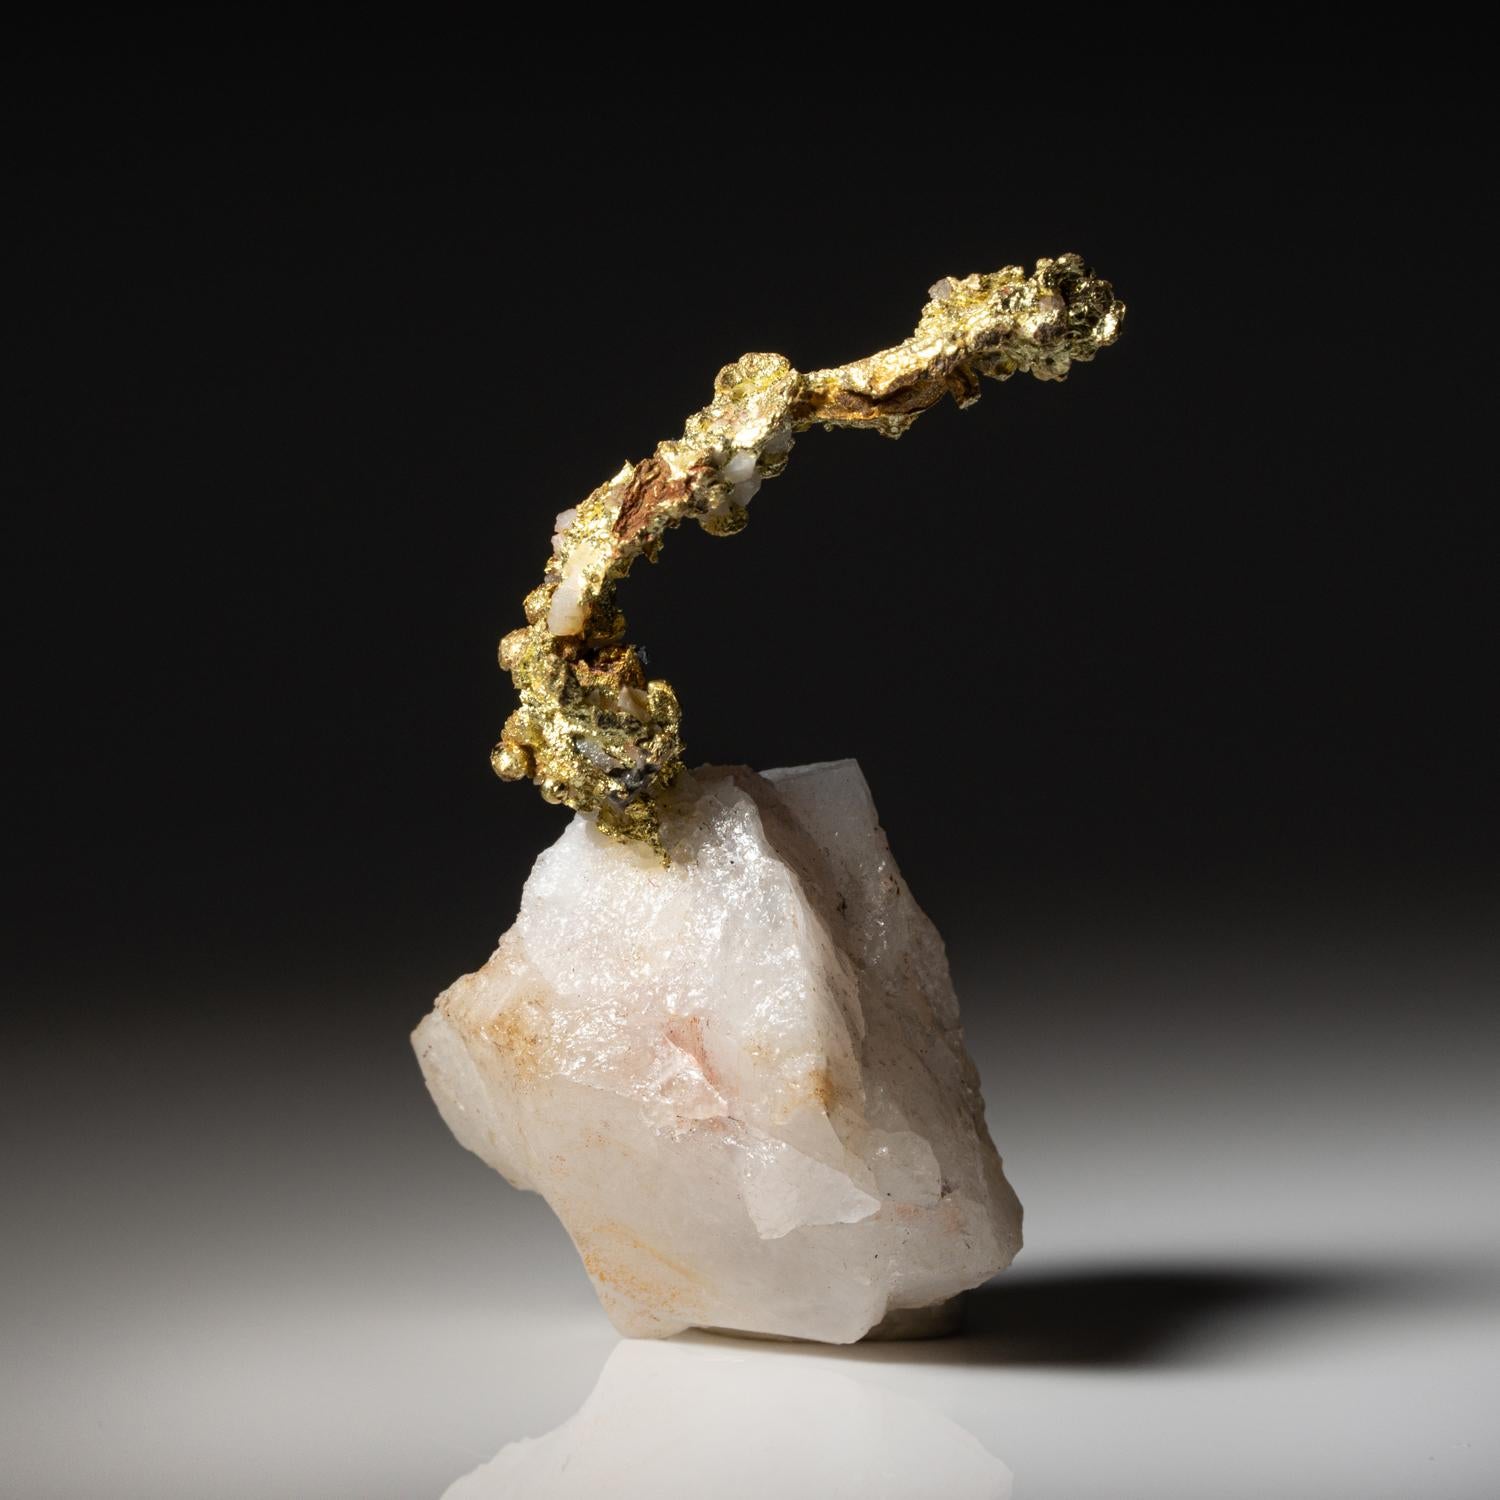 aus Aouint Ighoman, Provinz Assa-Zag, Region Guelmim-Oued Noun, Marokko

 

Gut kristallisierte Goldstufe mit allseitiger Spinellverzwillingung. Das Gold befindet sich auf einer Quarzmatrix. Glänzender, goldgelber Glanz. Neuer Fund aus dem Jahr